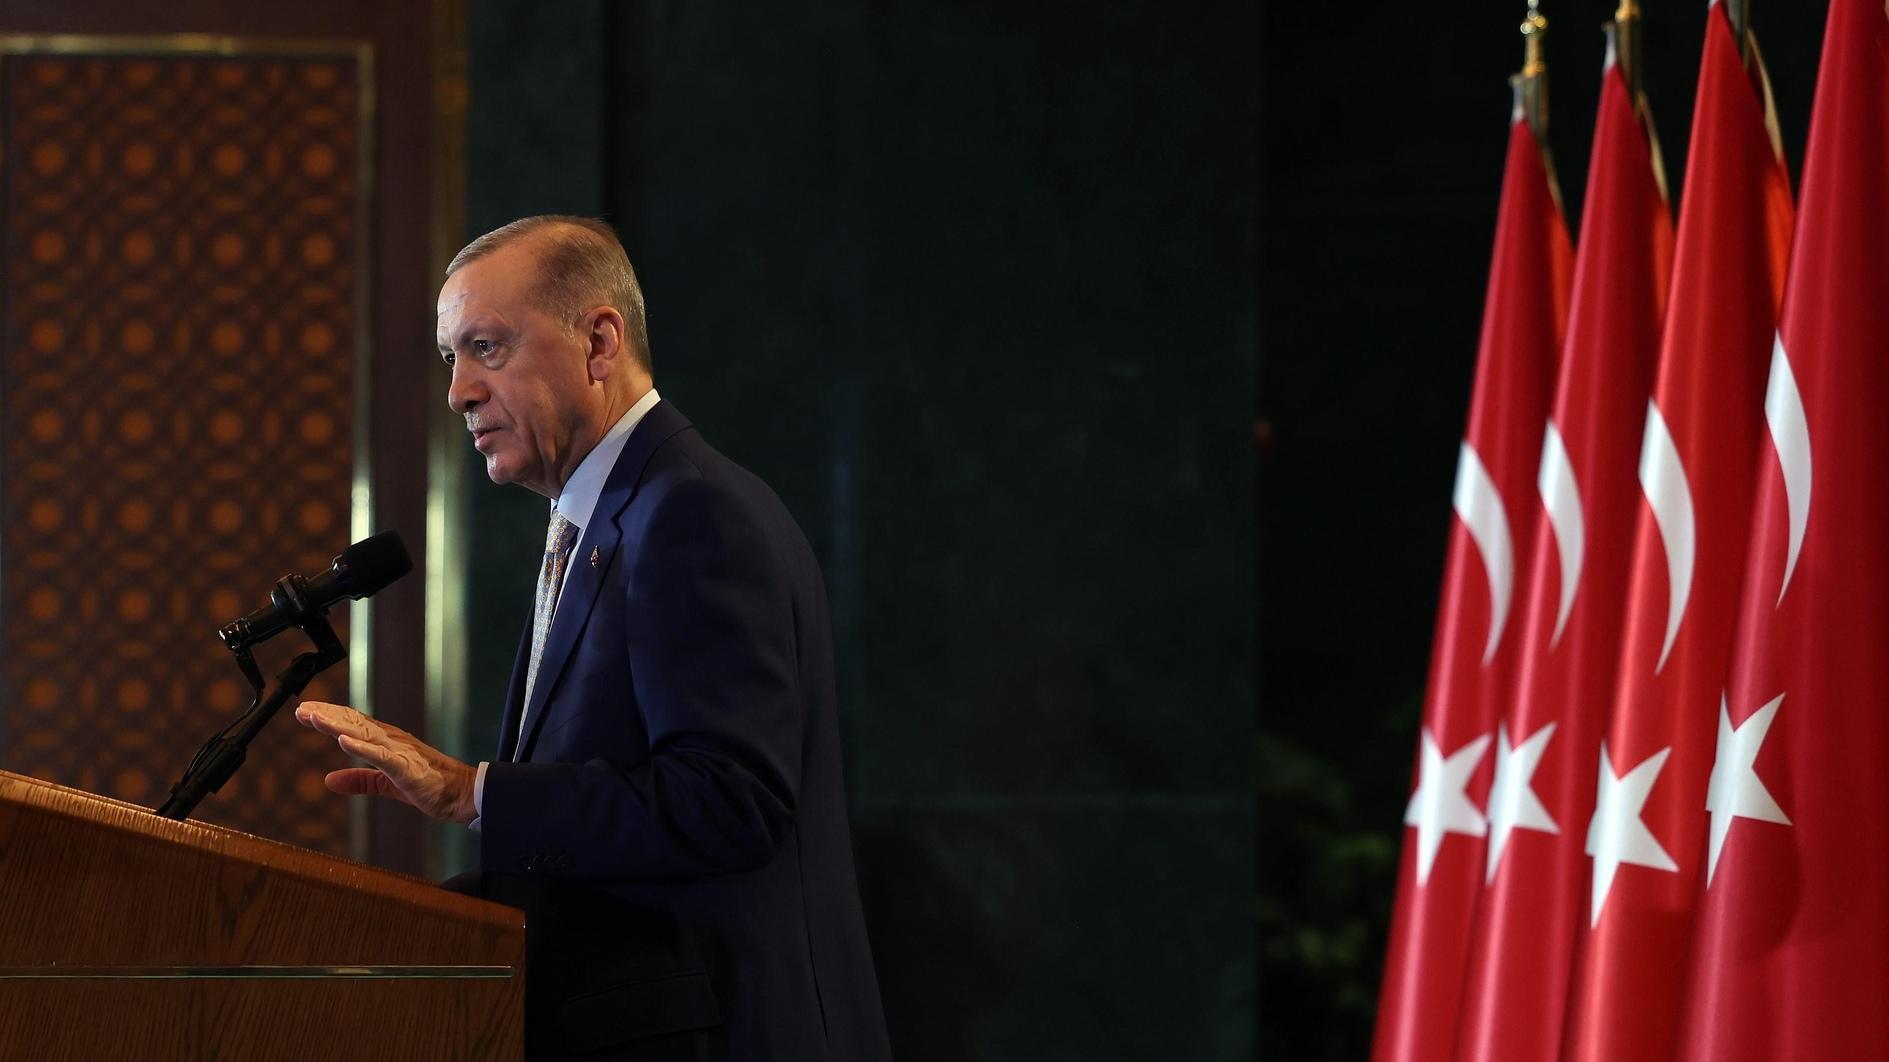 Erdoğan belooft veilige, vreedzame verkiezingen